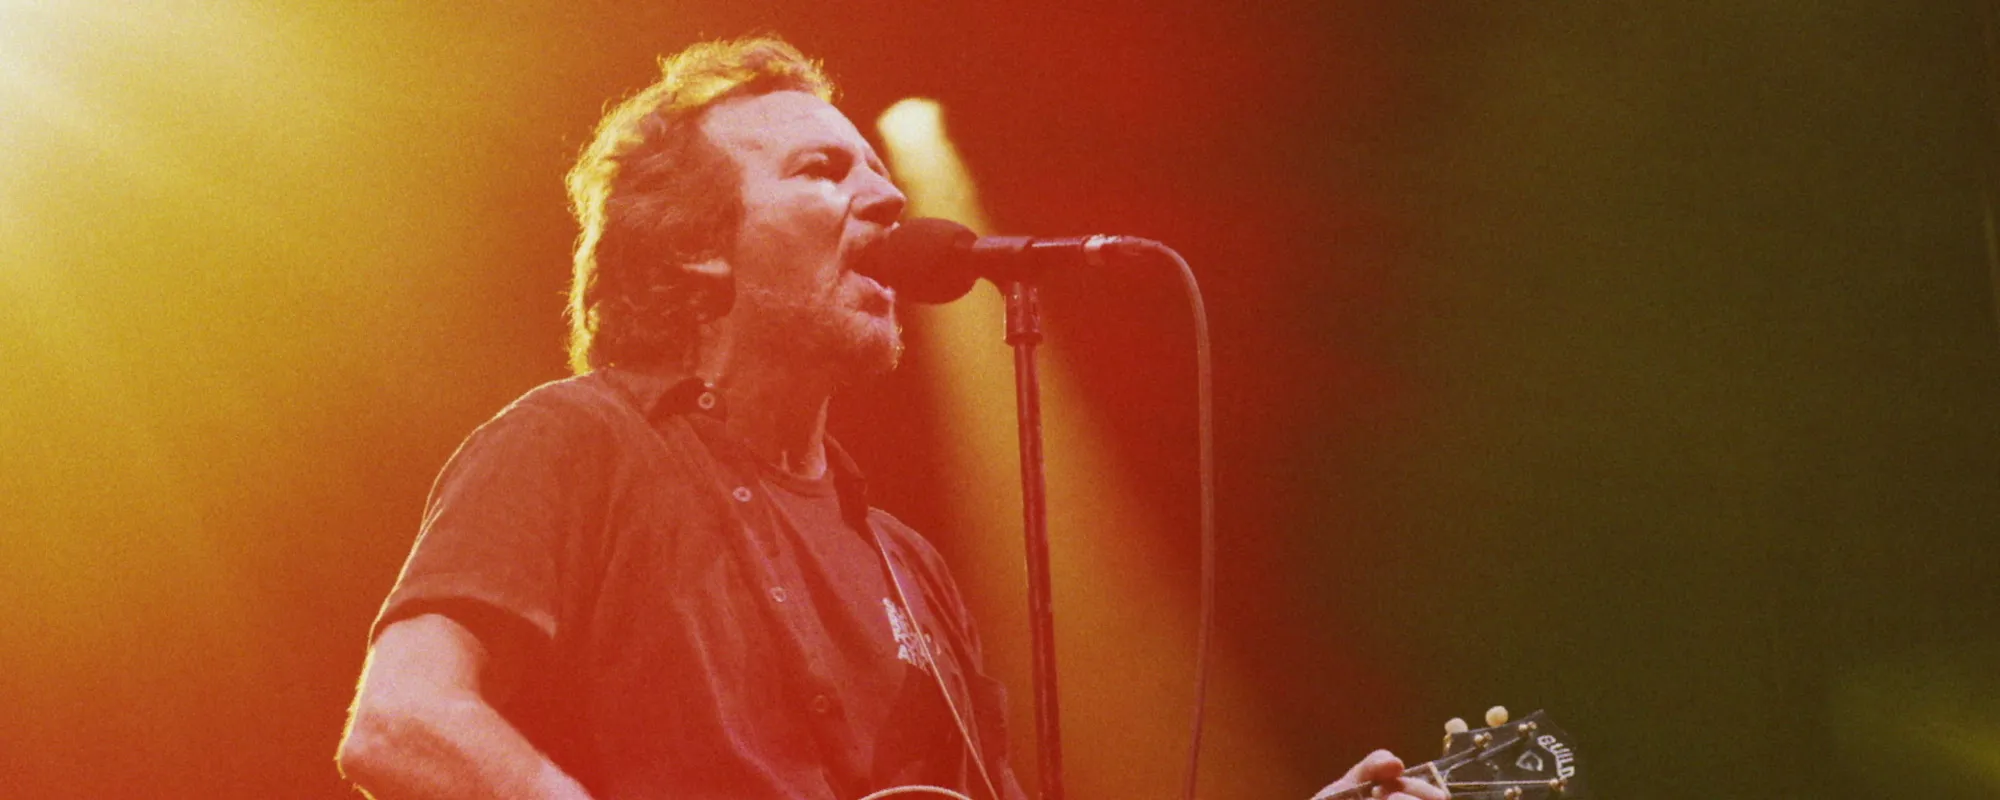 Eddie Vedder, Alice in Chains Remember Fallen Friend Mark Lanegan at Seattle Show